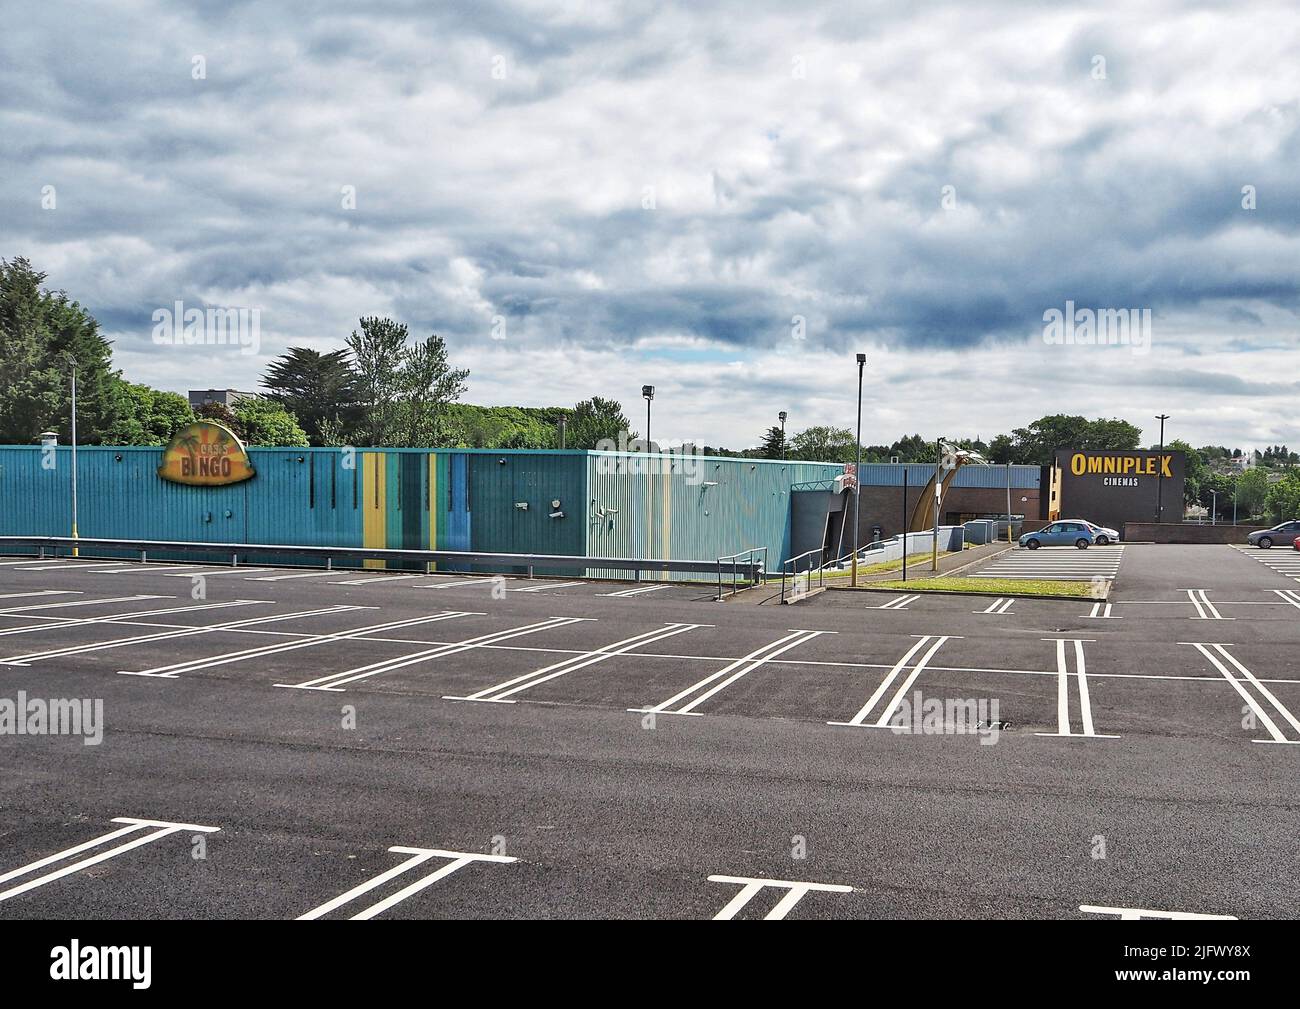 Oasis Bingo and Bangor Omniplex cinema in Bangor city, Northern Ireland Stock Photo